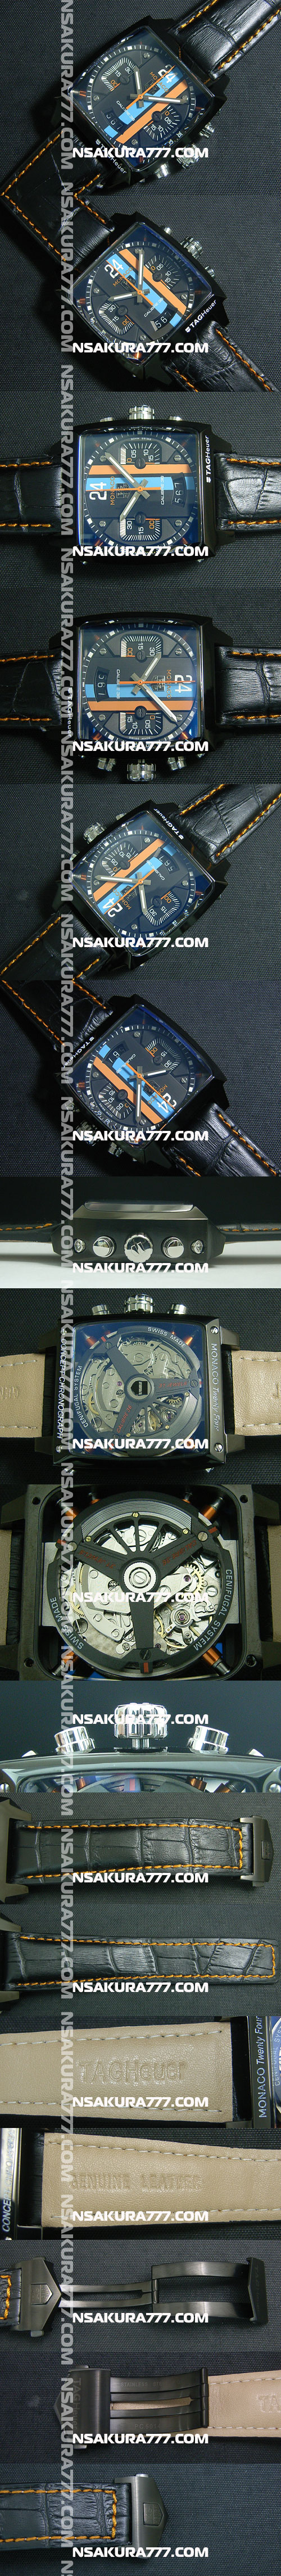 レプリカ時計タグ-ホイヤー モナコ24 コンセプト クロノグラフ Asian 7750搭載 - ウインドウを閉じる